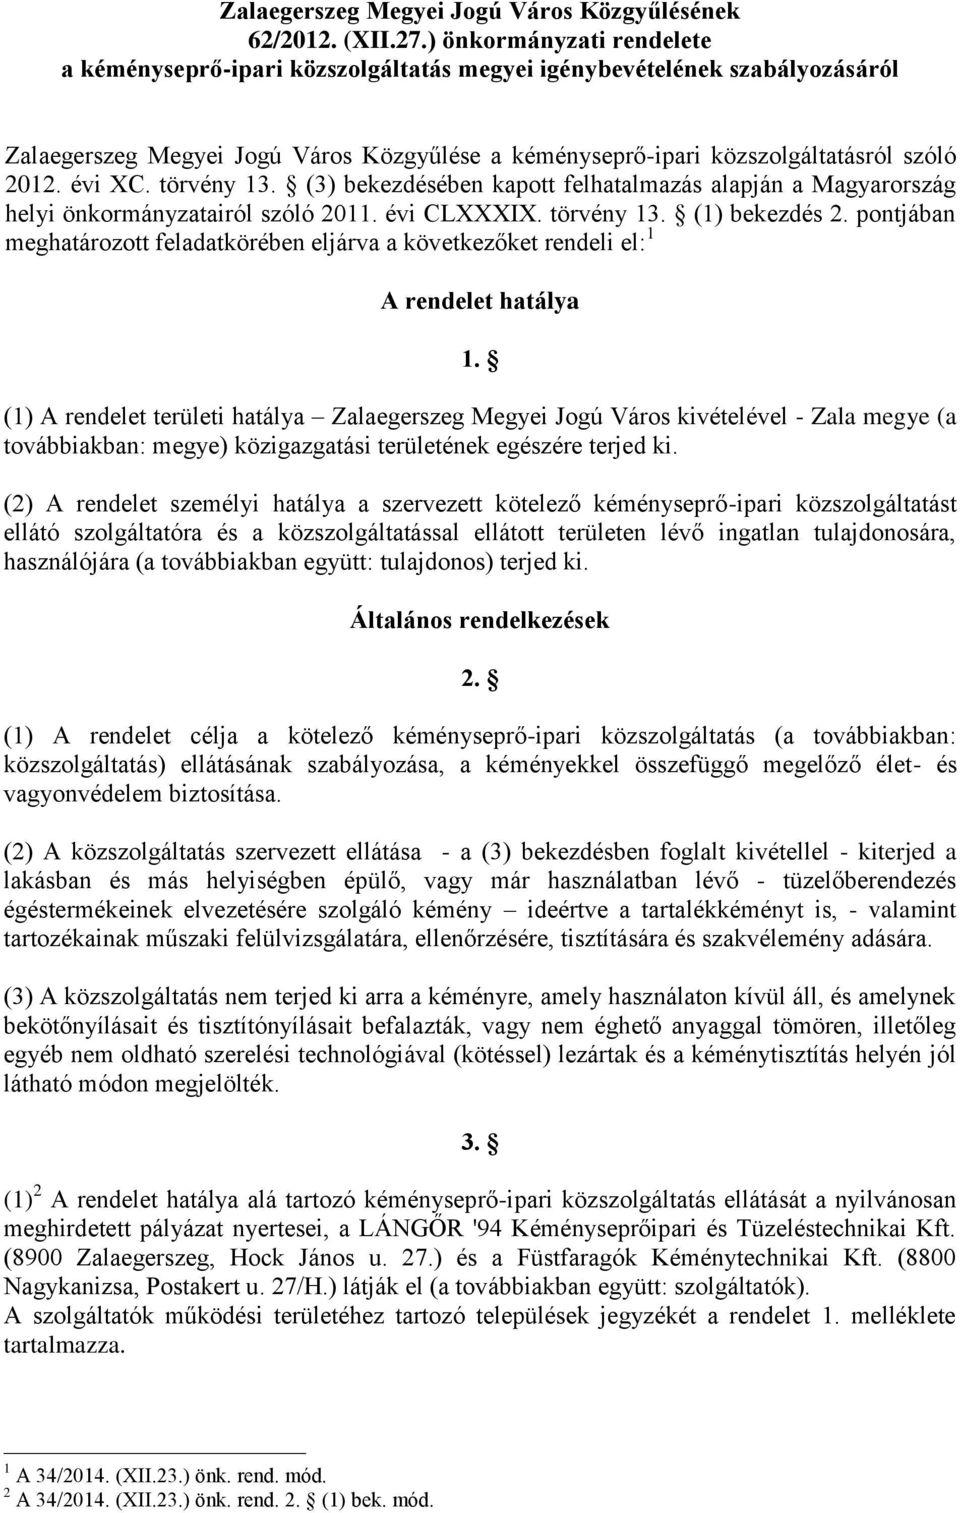 évi XC. törvény 13. (3) bekezdésében kapott felhatalmazás alapján a Magyarország helyi önkormányzatairól szóló 2011. évi CLXXXIX. törvény 13. (1) bekezdés 2.